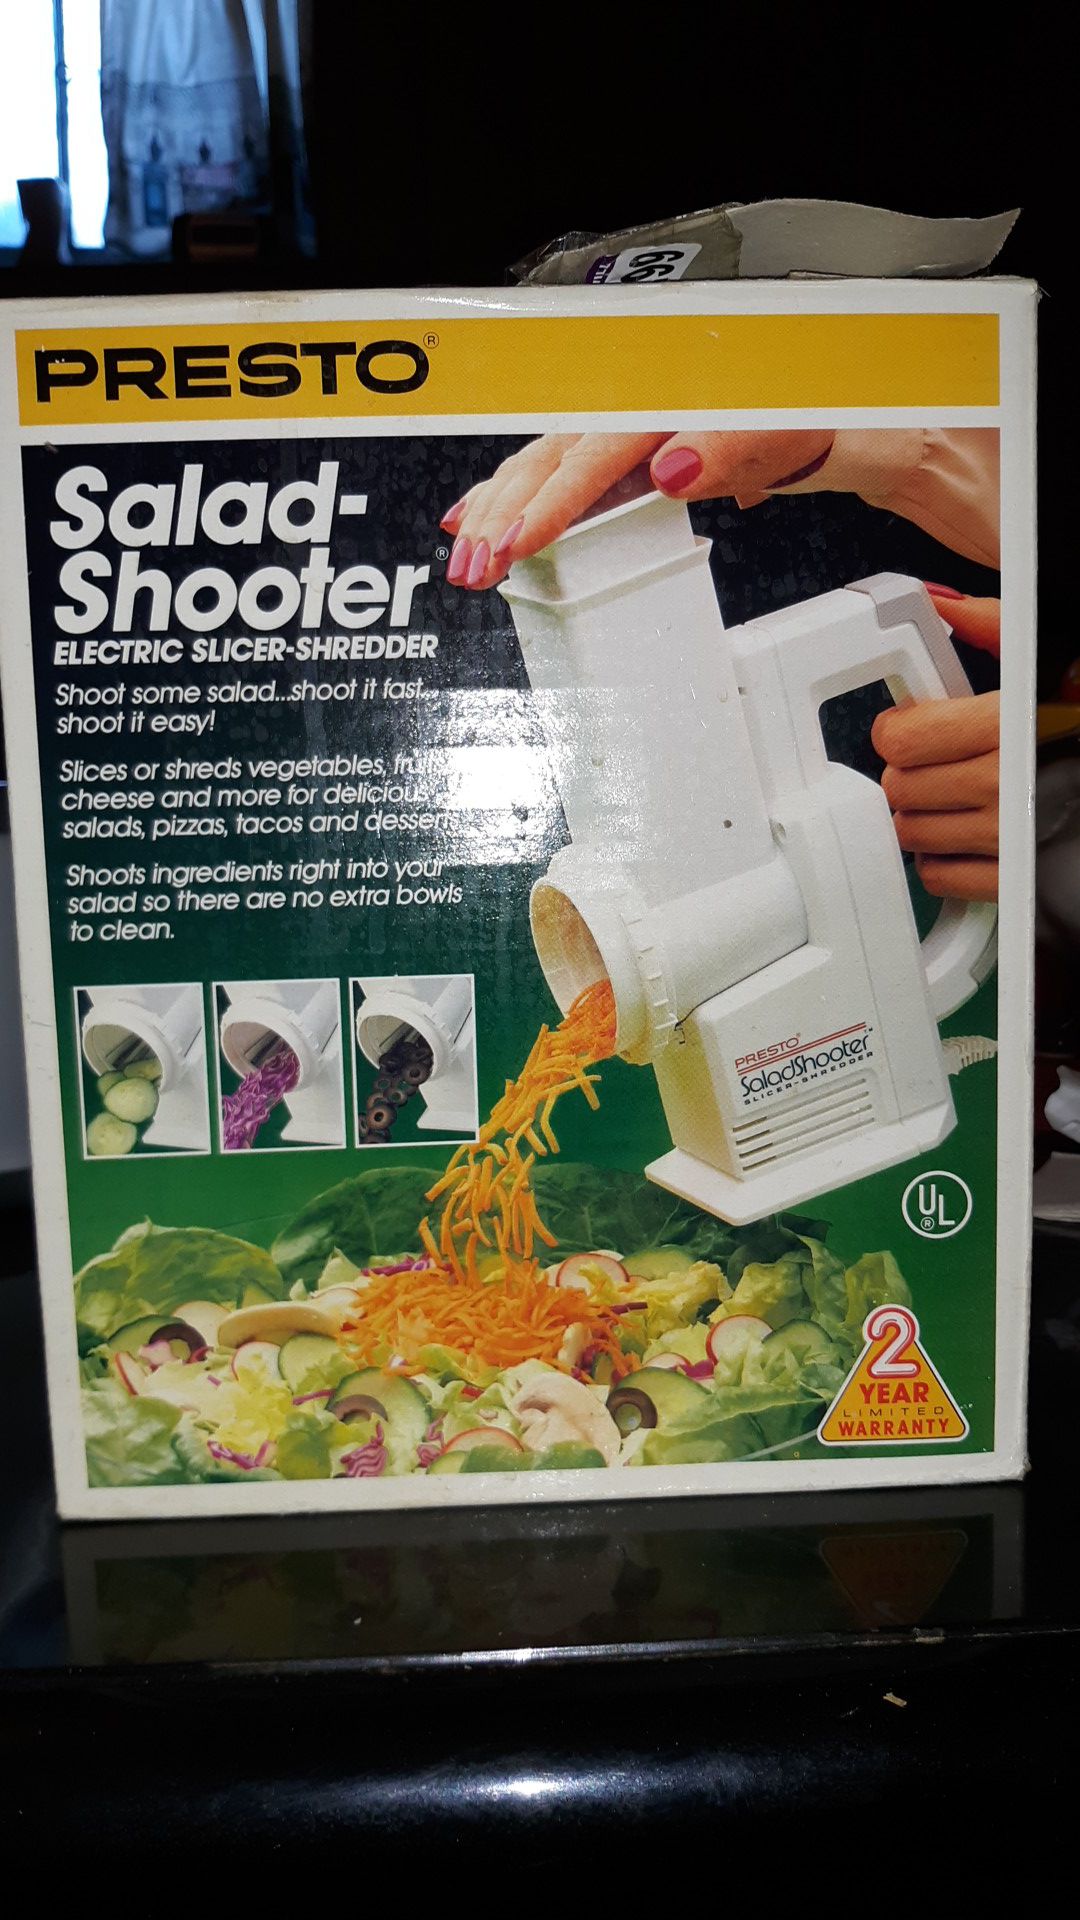 Presto Salad Shooter Electric Slicer-Shredder for Sale in Dayton